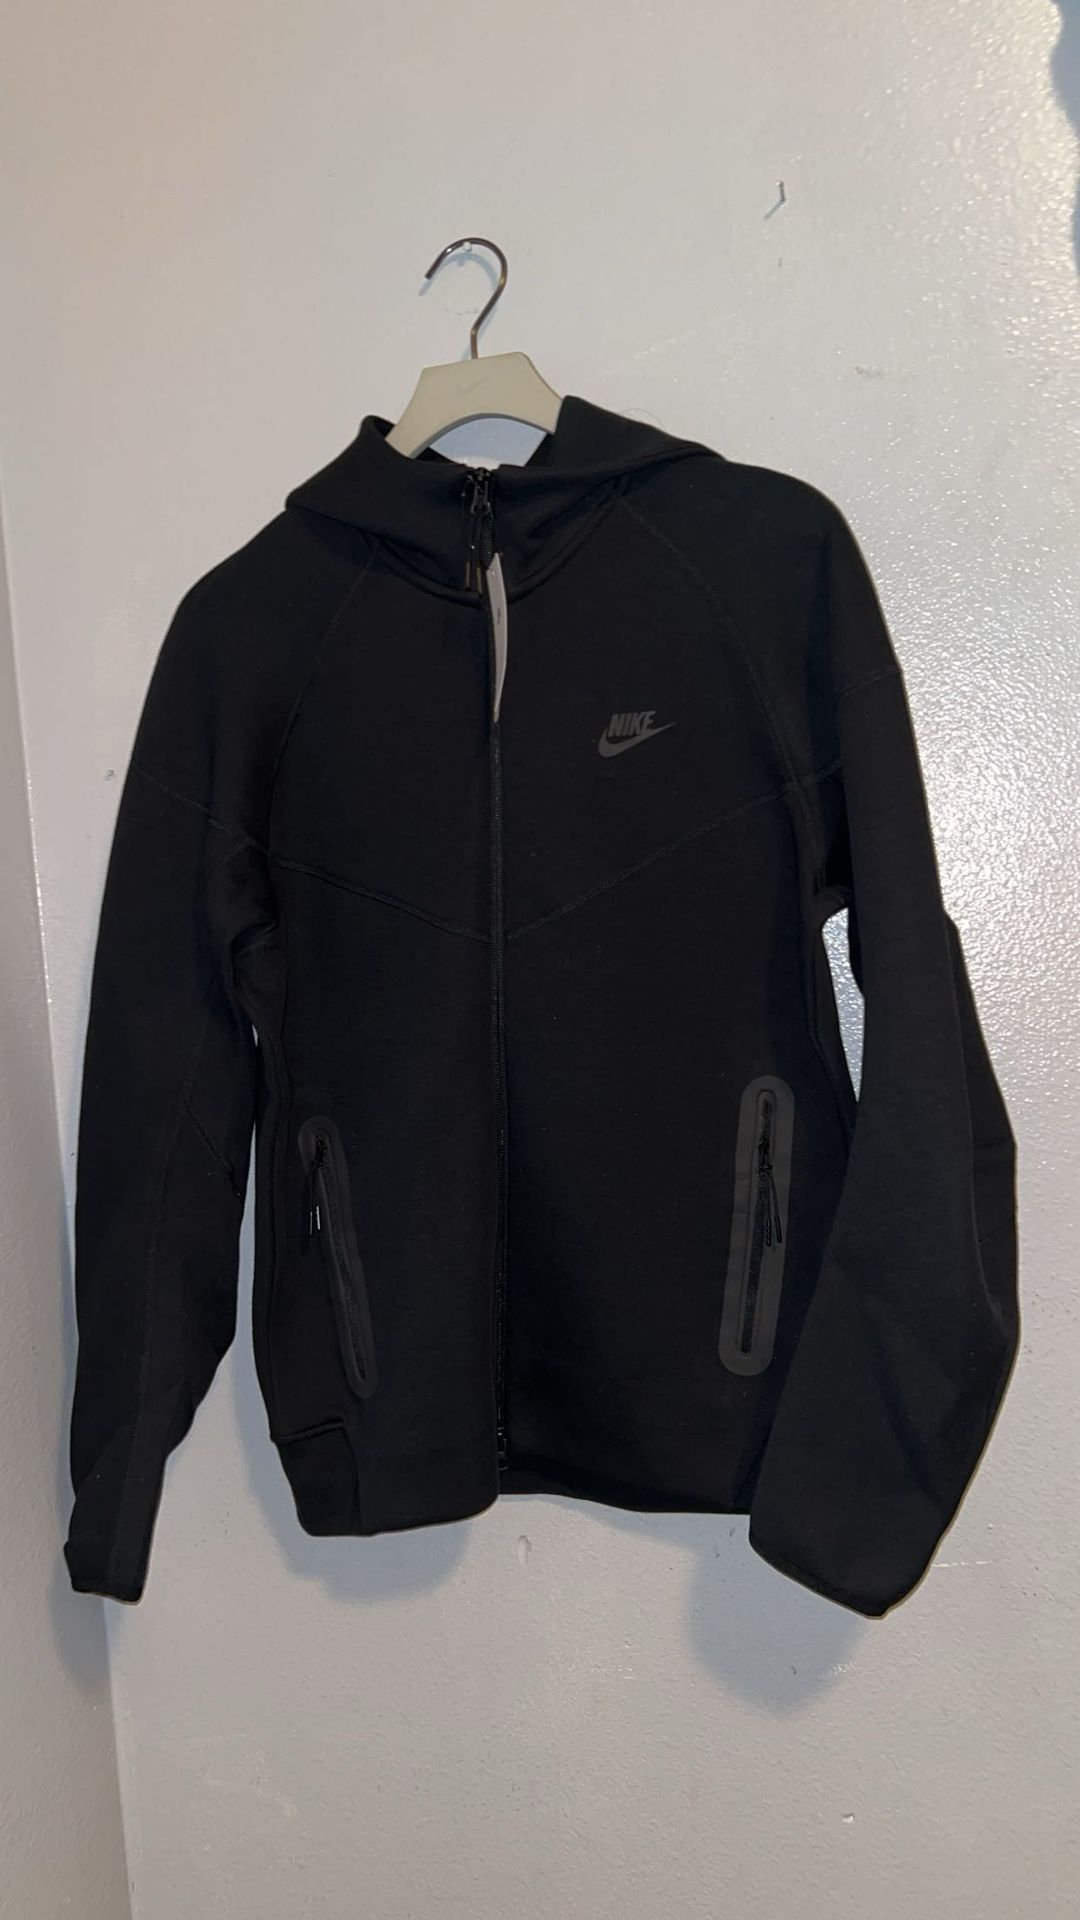 New Nike Tech Black Fleece Sweater